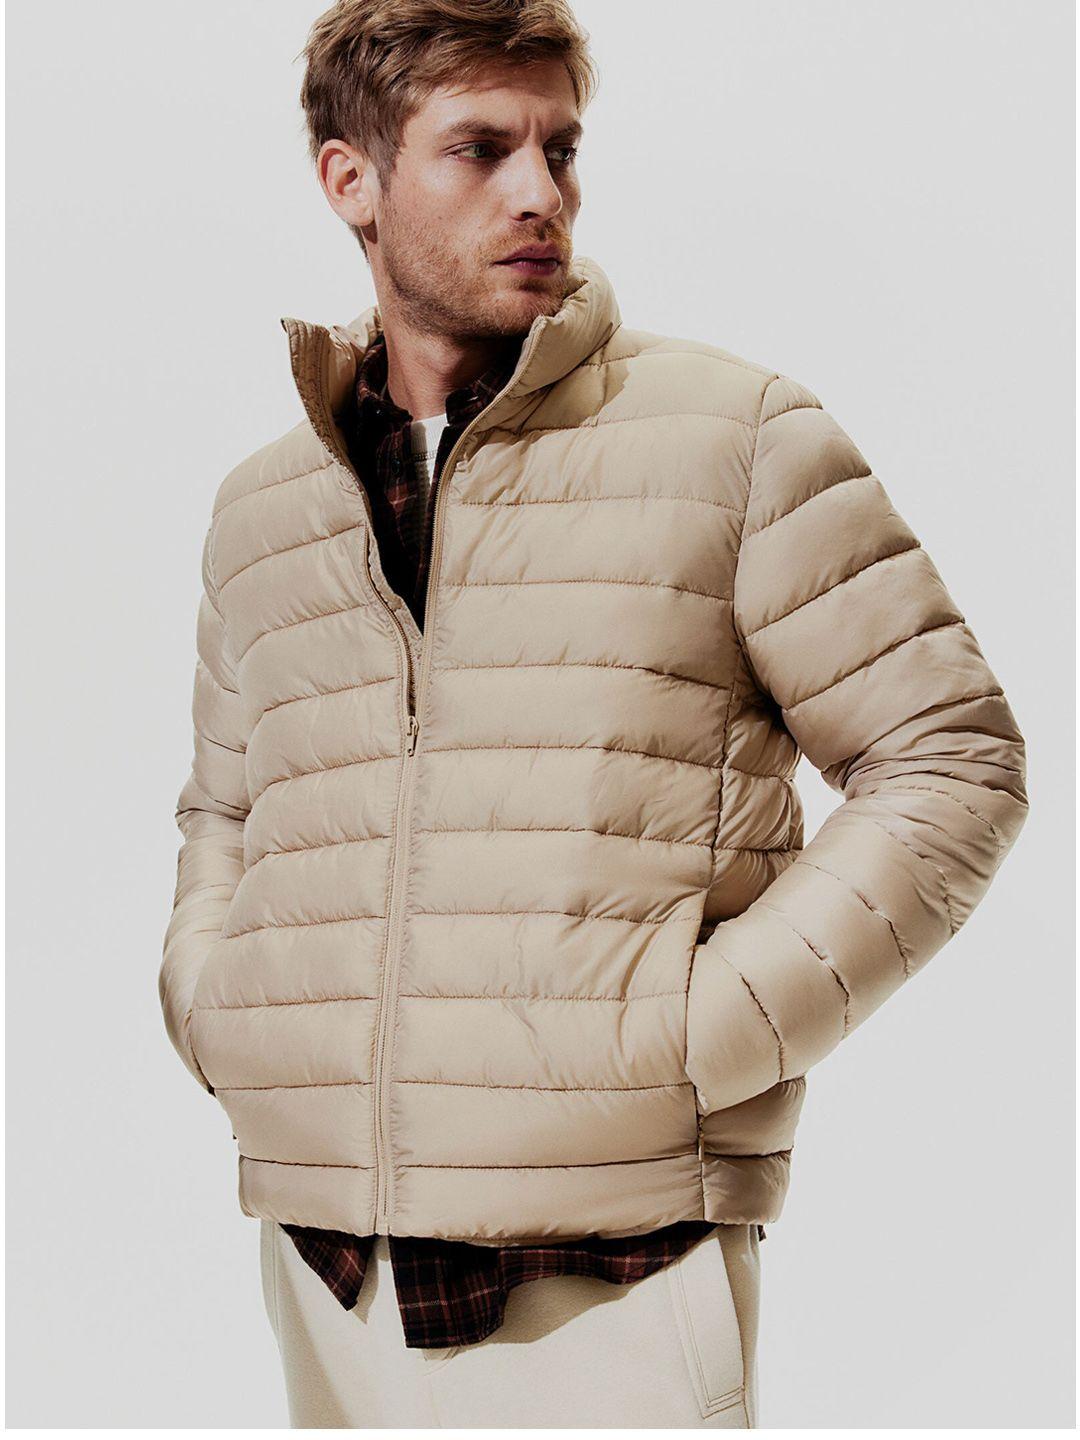 h&m lightweight puffer jacket